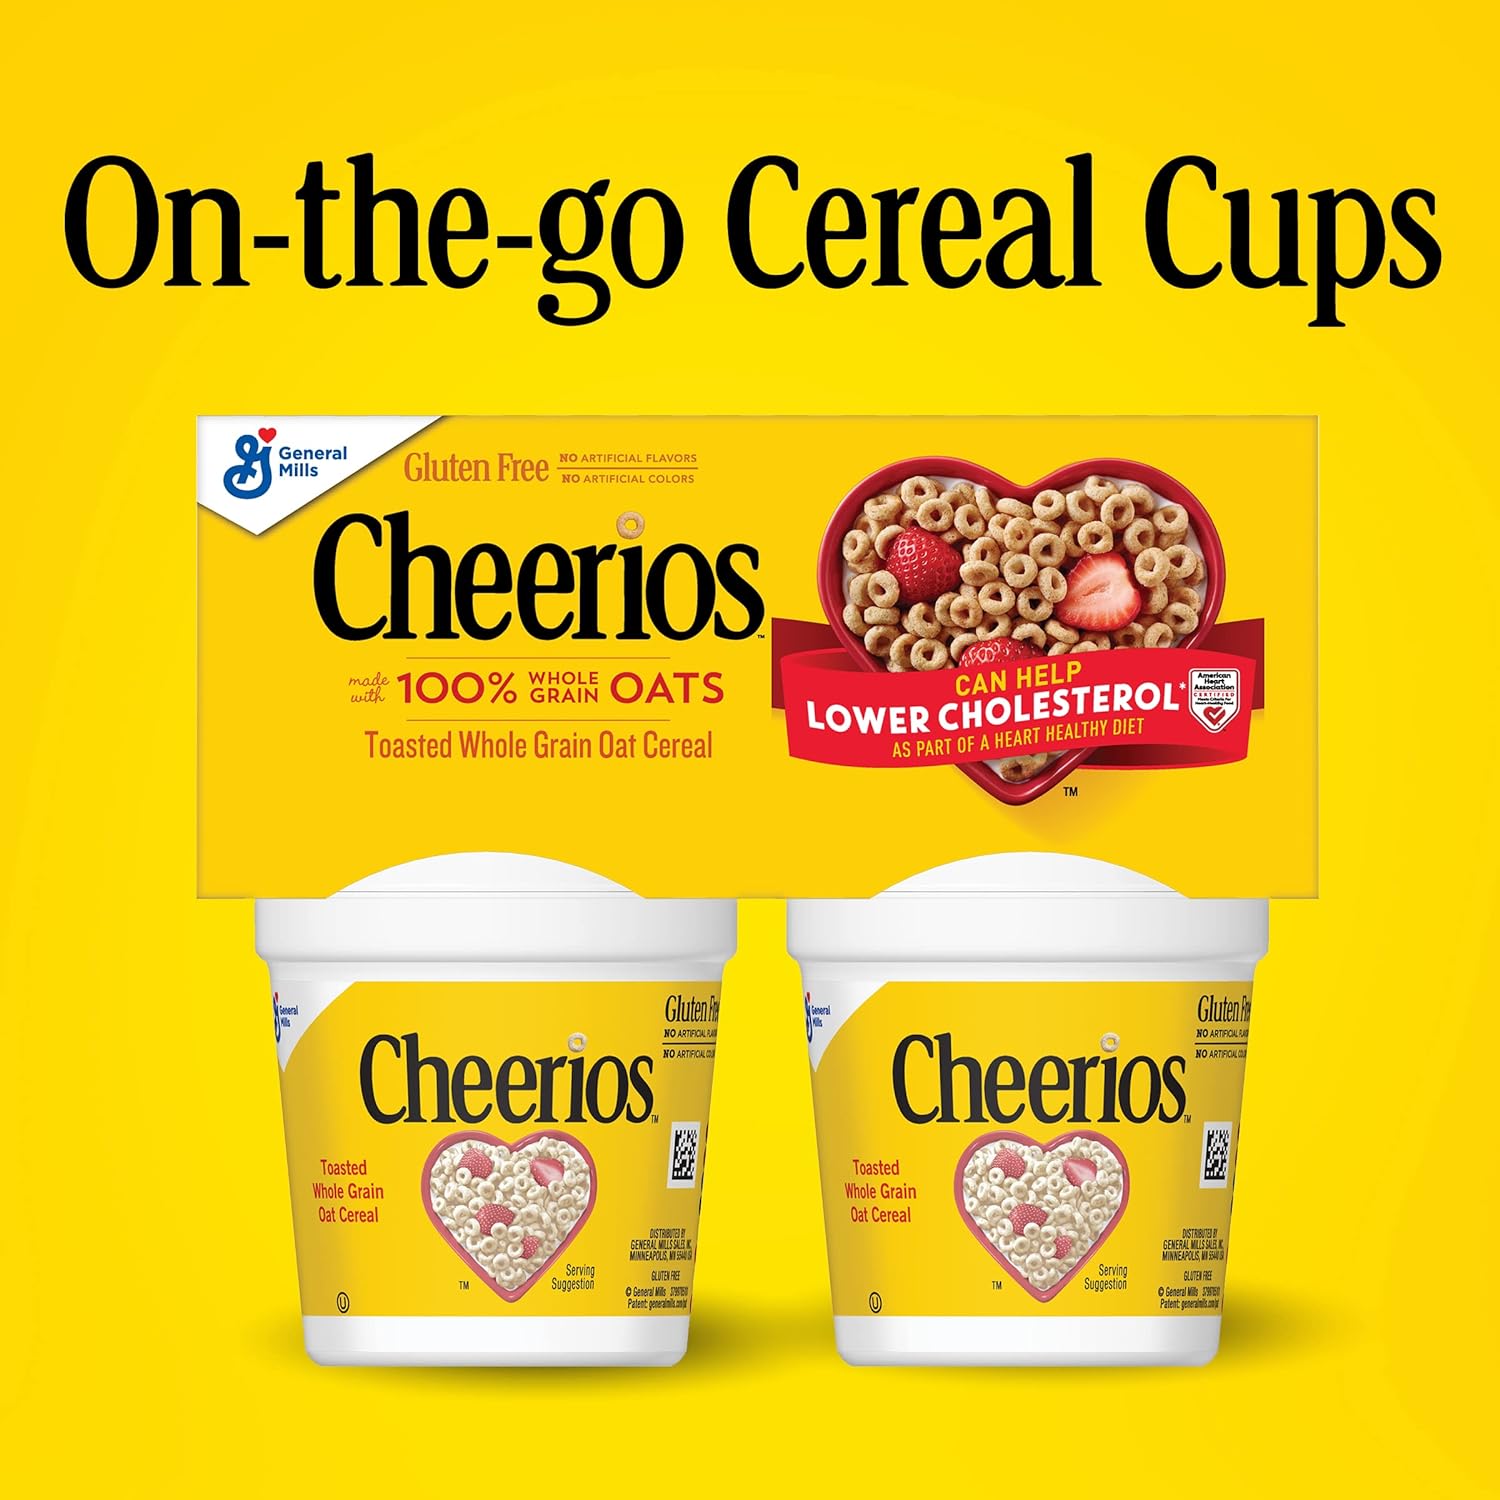 Big G Cereal Original Cheerios Gluten Free Cereal, 4PK CUP 5.2OZ